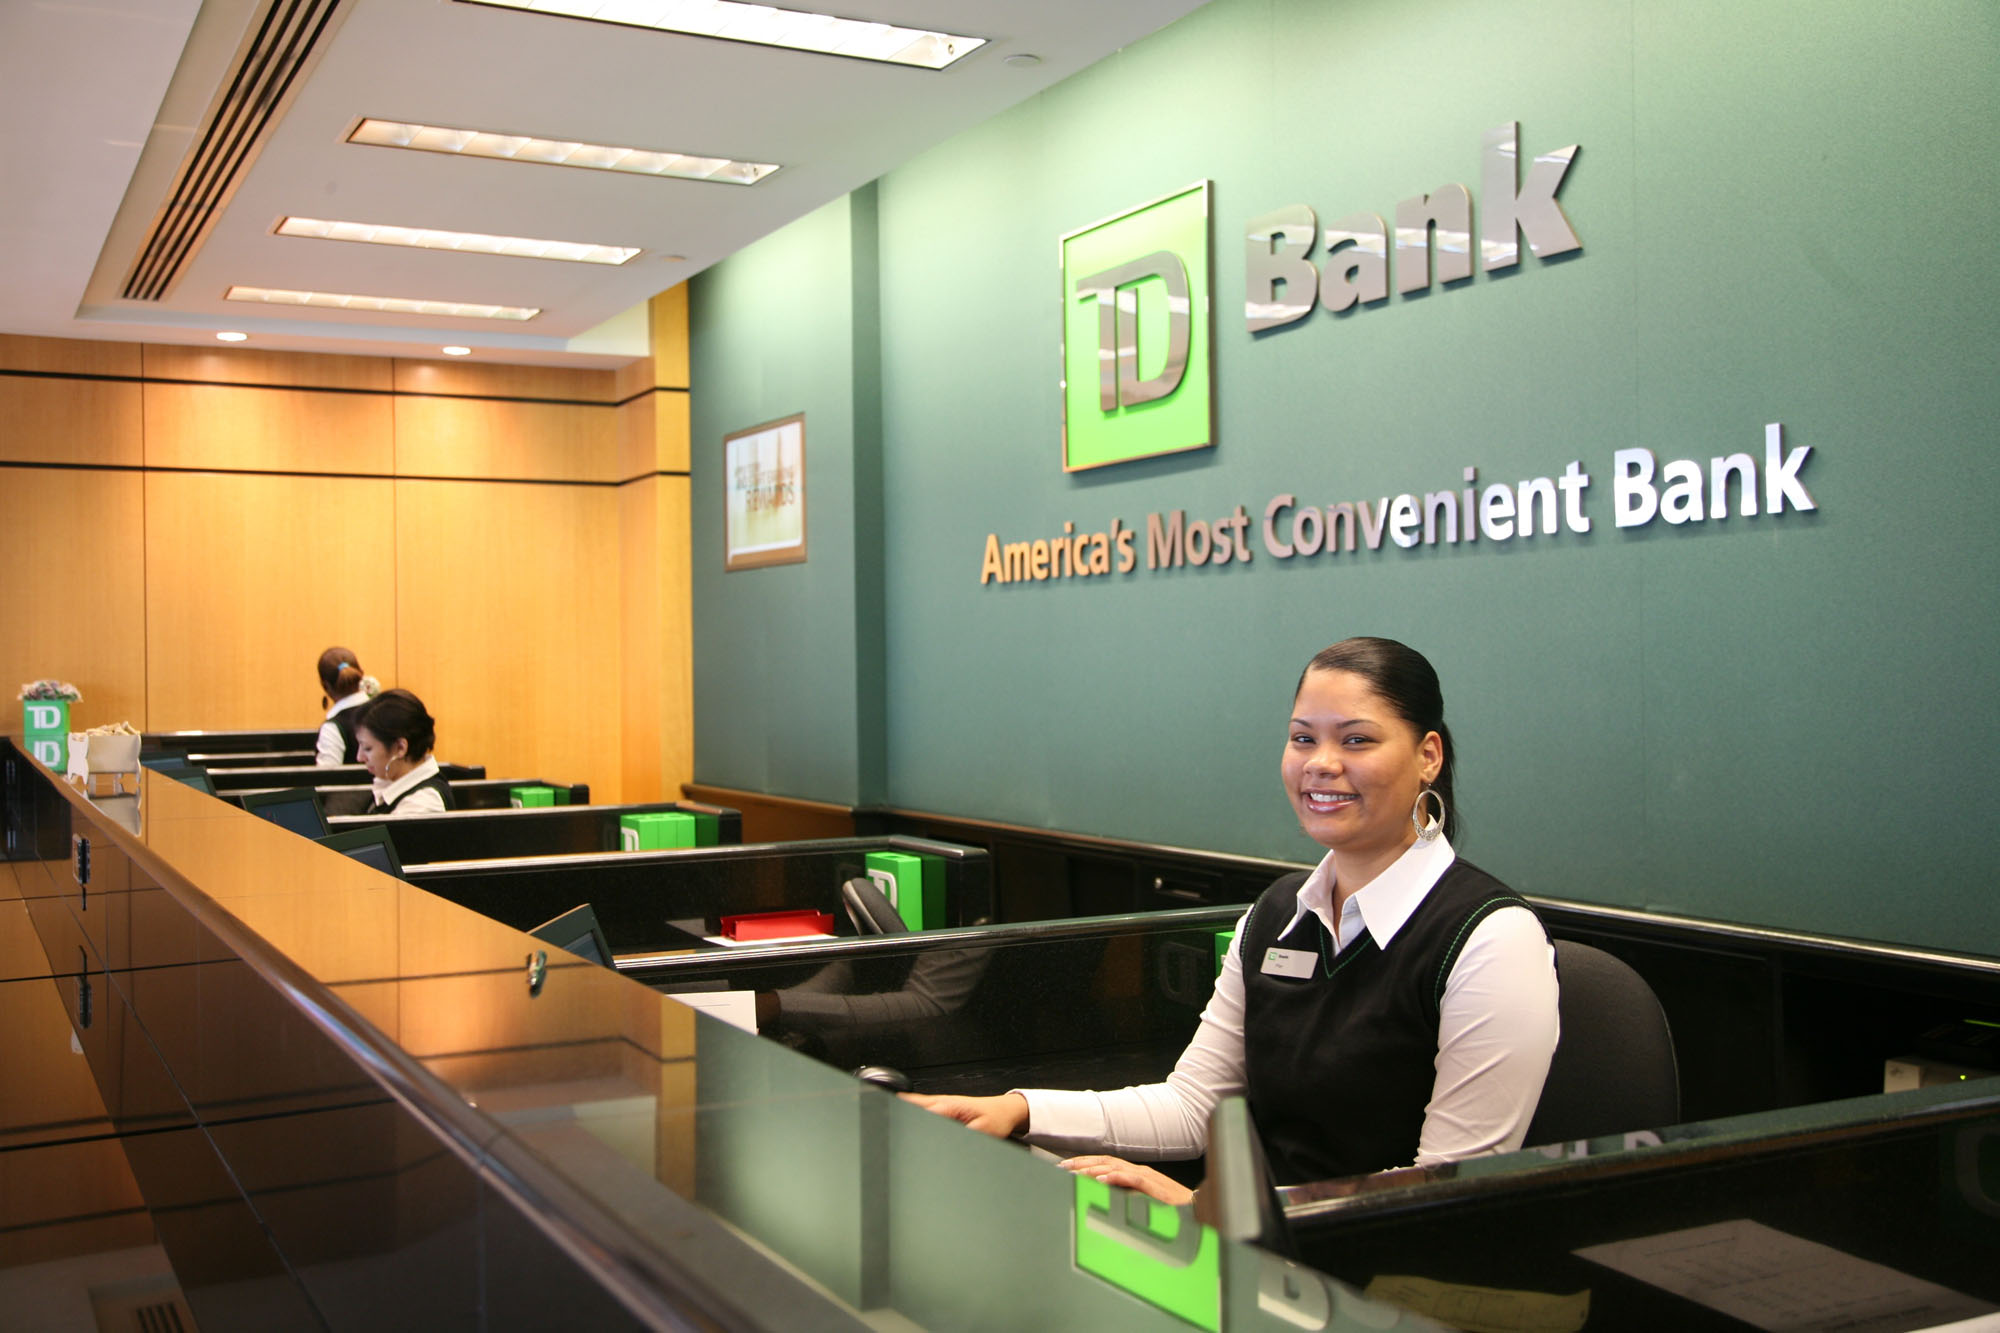 Bank Teller là gì?